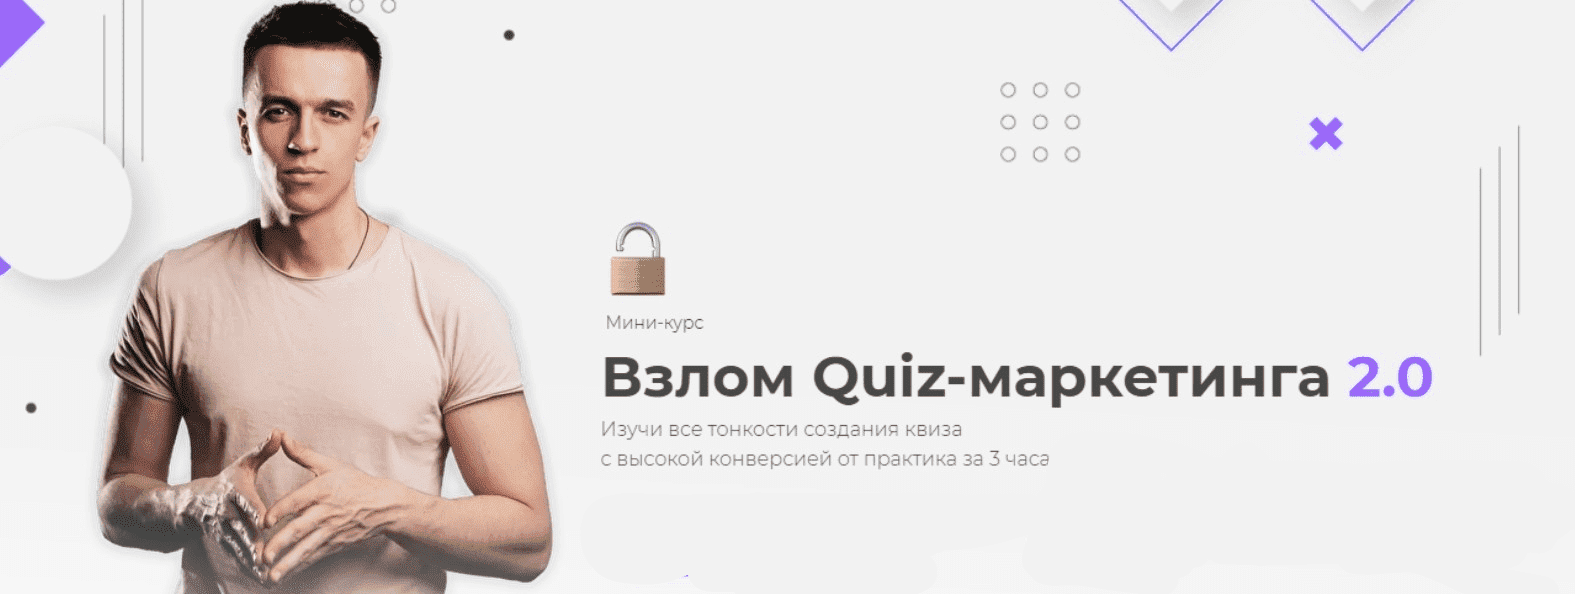 Скачать - Юрий Санько, Алексей Малашков. Взлом Quiz-маркетинга 2.0 (2021).png